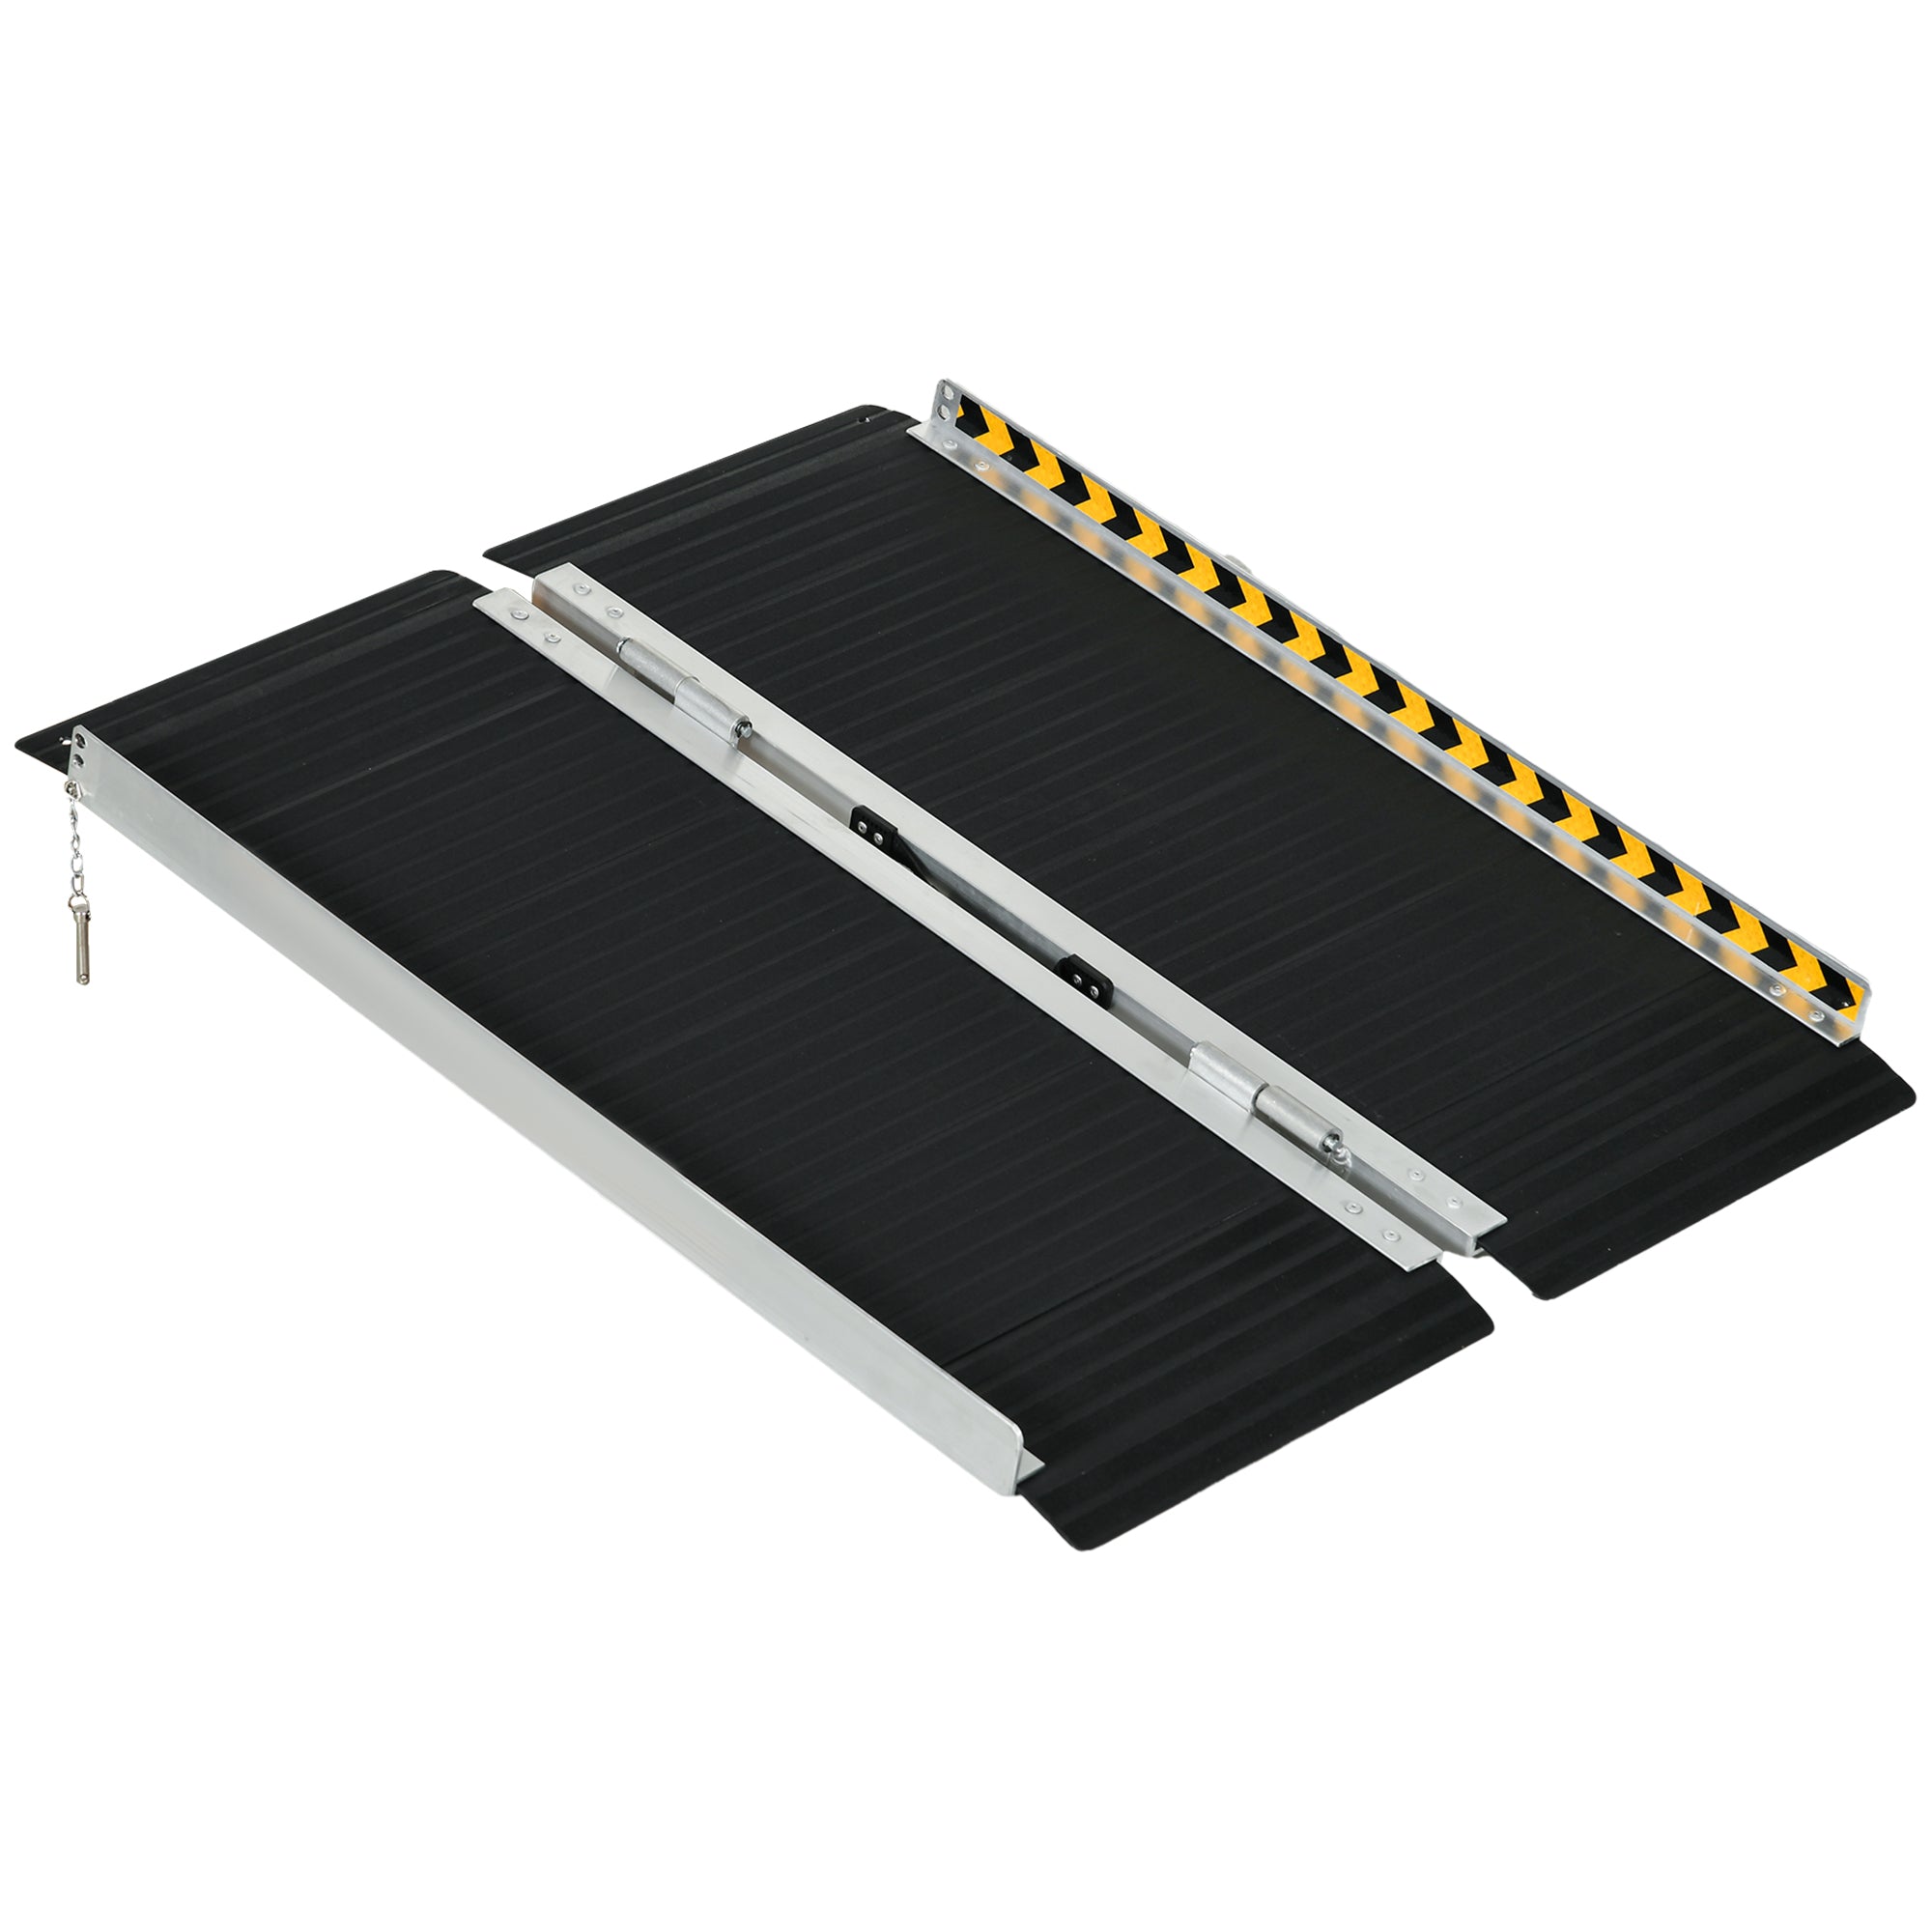 Rampa per Sedia a Rotelle Pieghevole 122x73,6x5,1 cm con Deflettori e Adesivi in Alluminio Nero